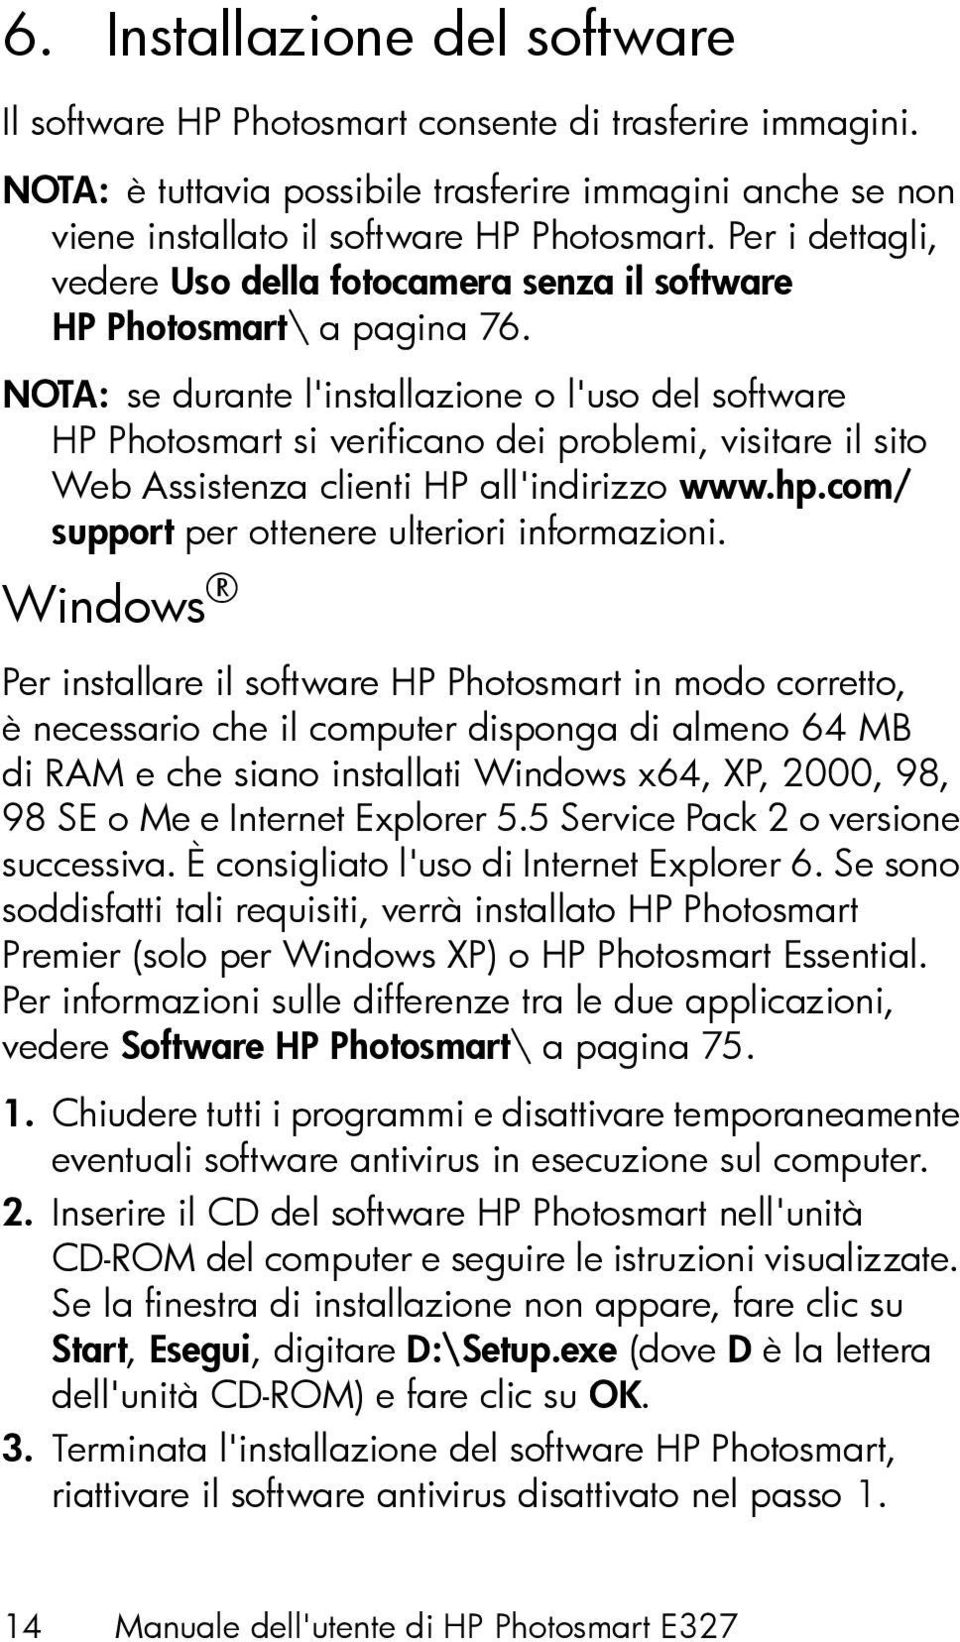 NOTA: se durante l'installazione o l'uso del software HP Photosmart si verificano dei problemi, visitare il sito Web Assistenza clienti HP all'indirizzo www.hp.